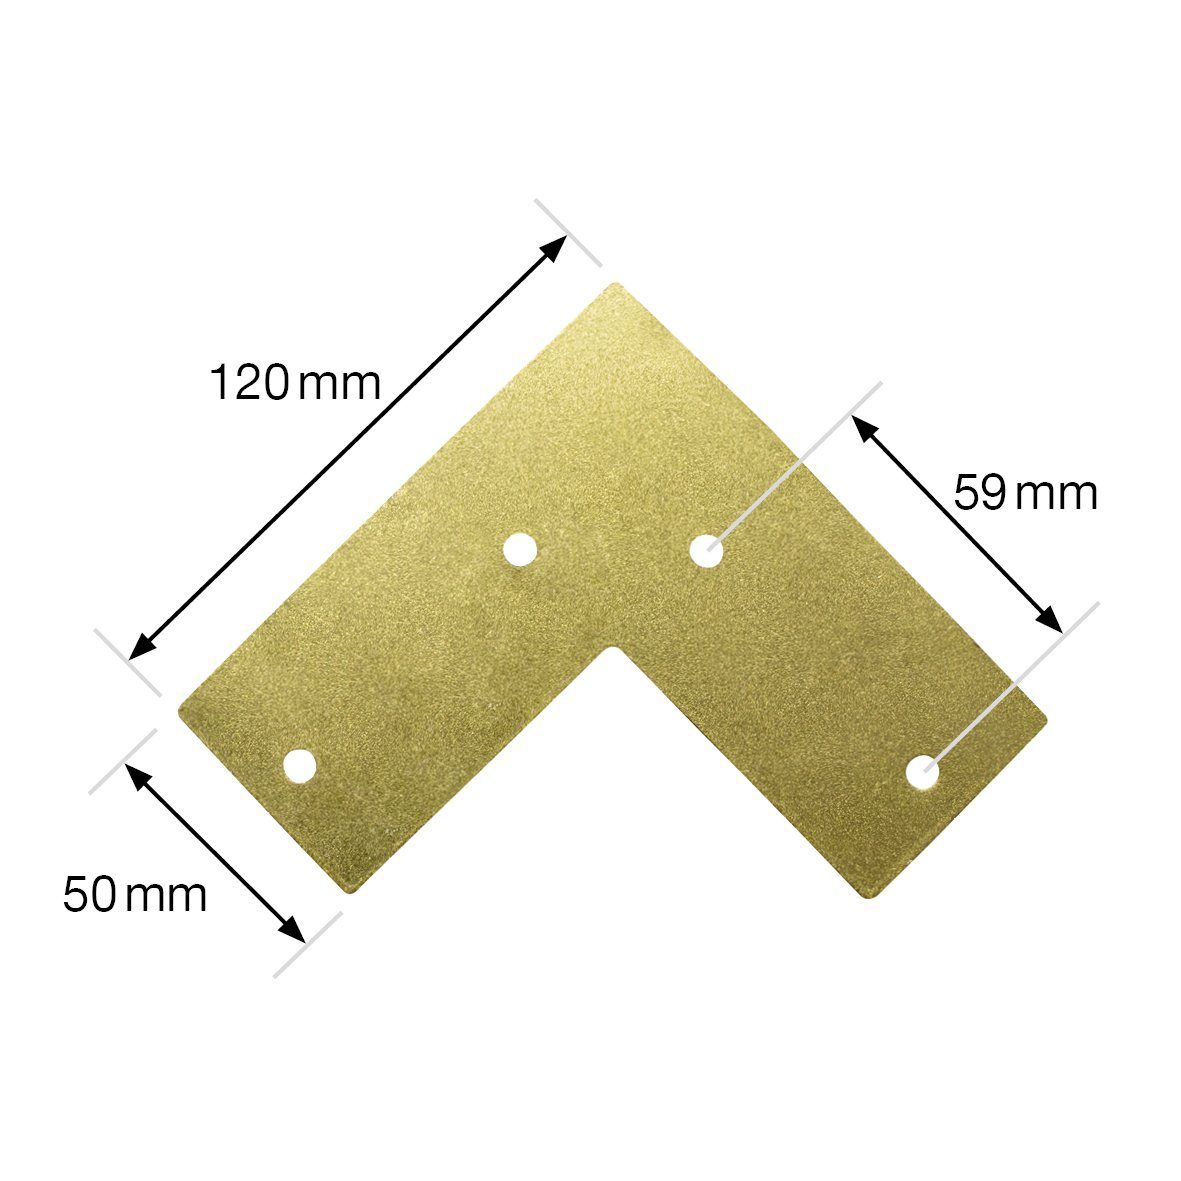 WAGNER design yourself Möbelfuß - Anschraubplatte x gold 12 Bein 12 Farben, cm verlaufend, in - LEG Retro Style 71 konisch/schräg diverse - mit x HAIRPIN Möbelbein/Tischbein integrierter